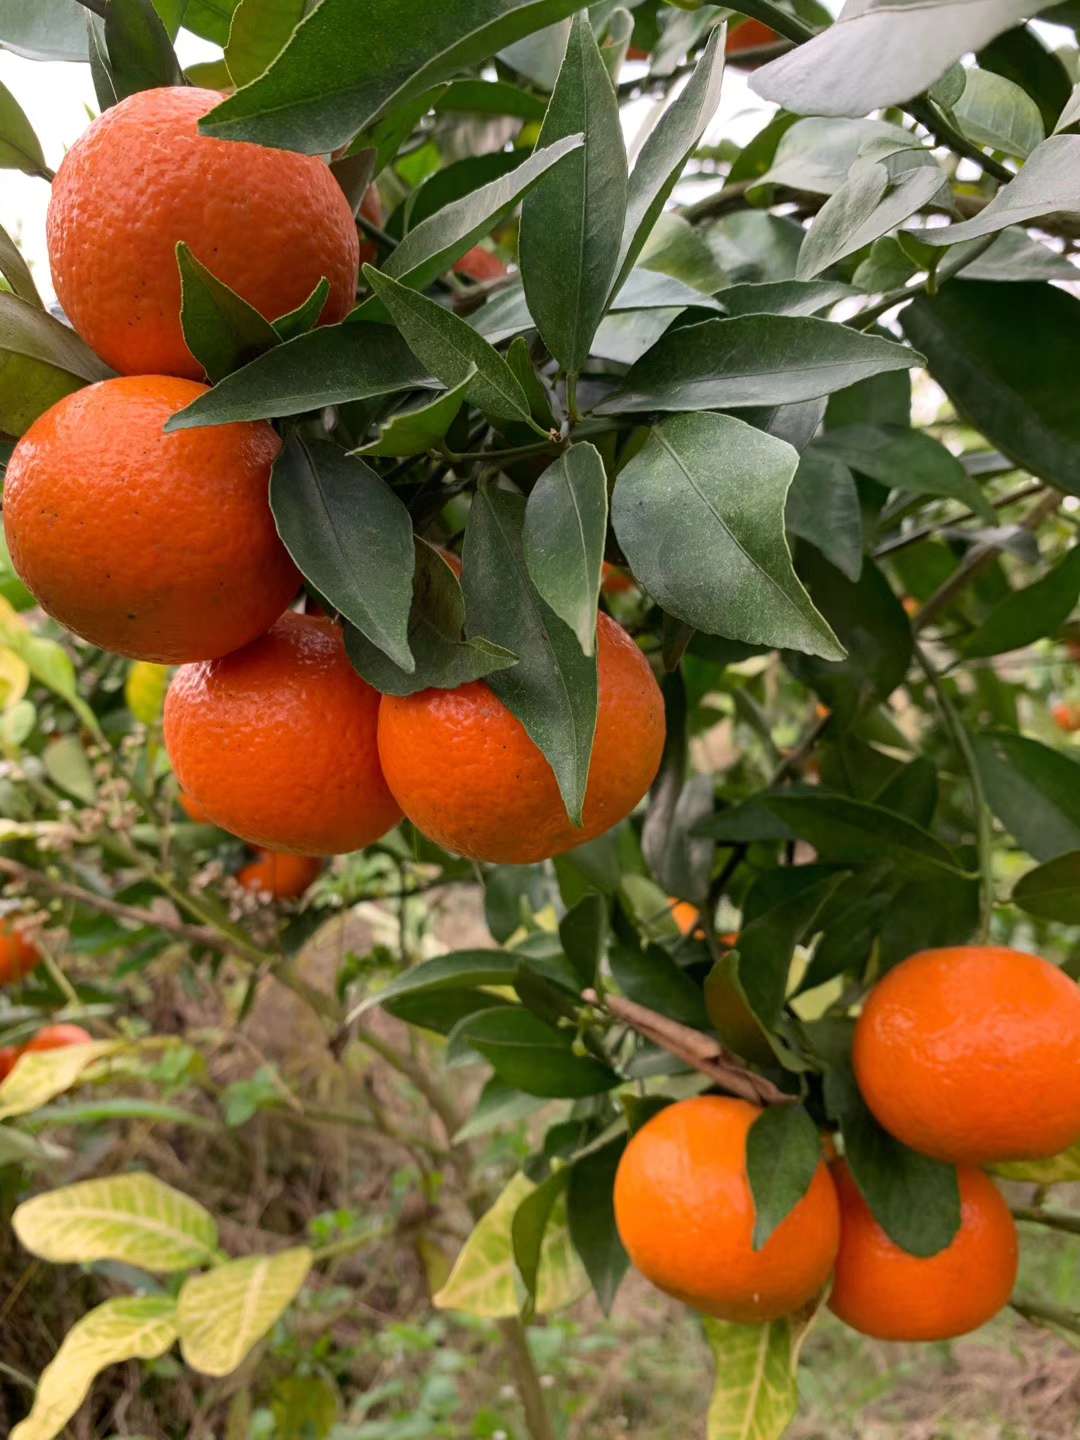 良种柑橘美国糖橘种类介绍9460 作者:imogor 